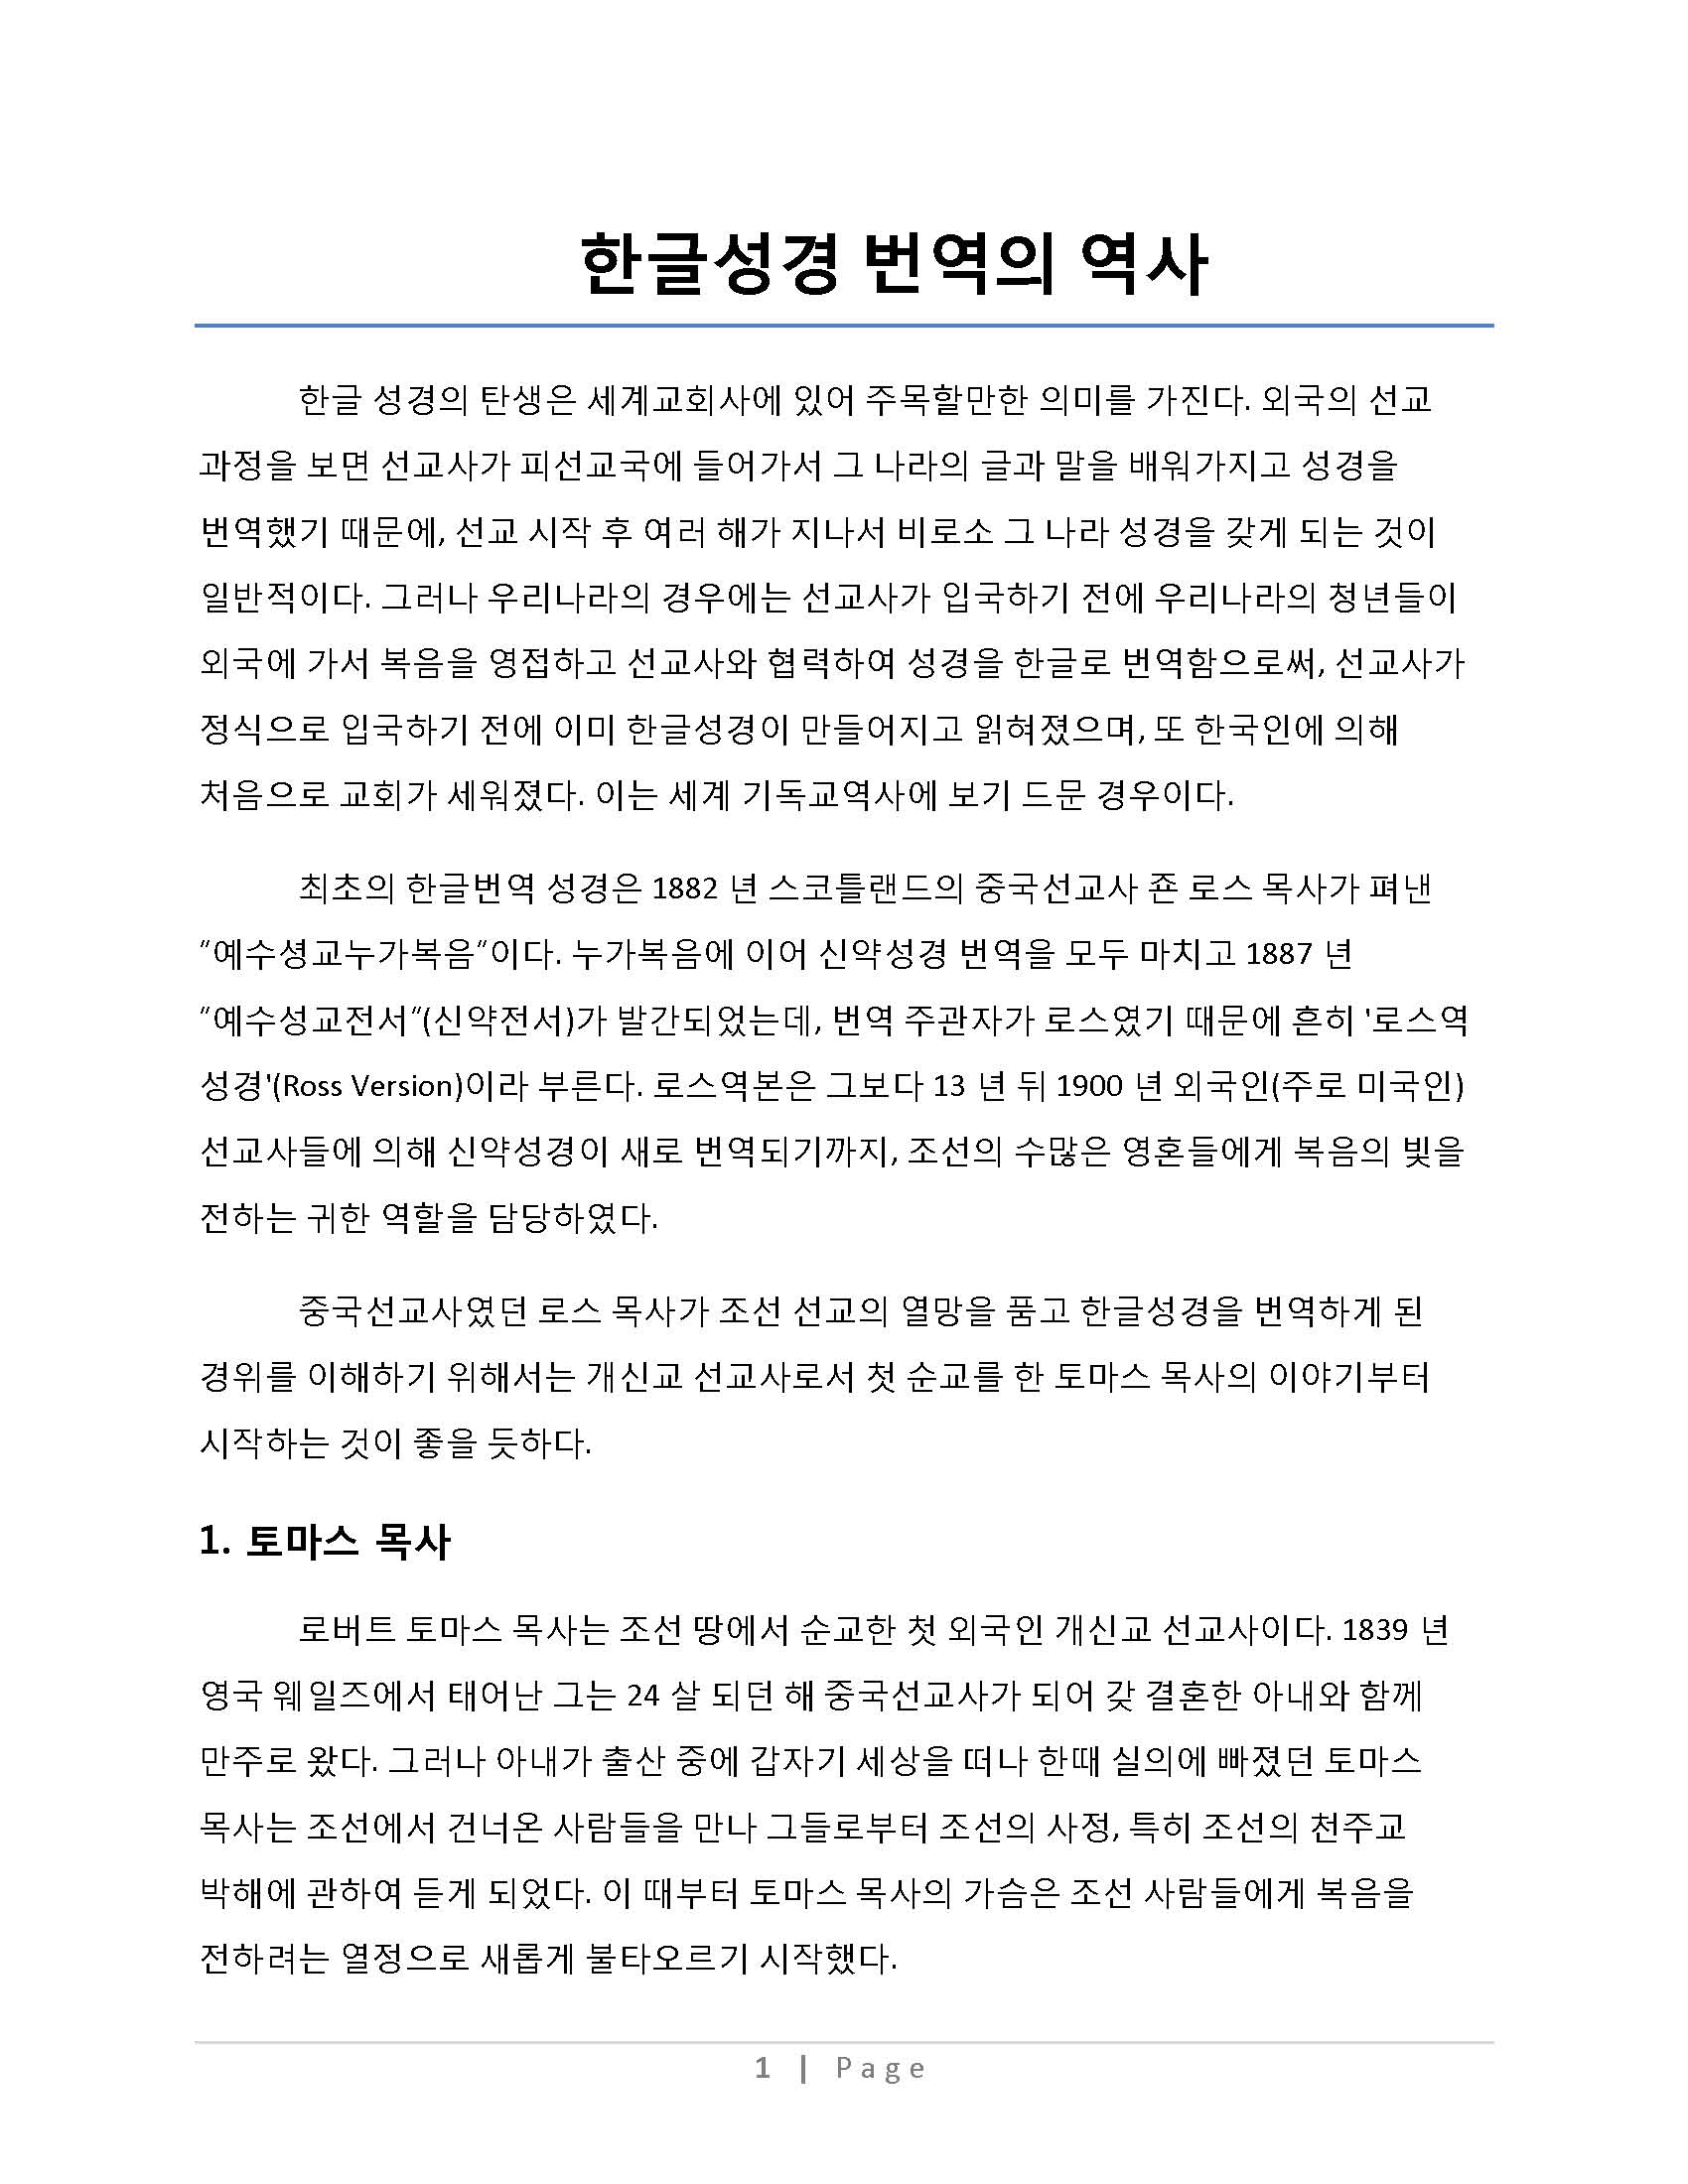 한국성경 번역의 역사_Page_15_Page_01.jpg